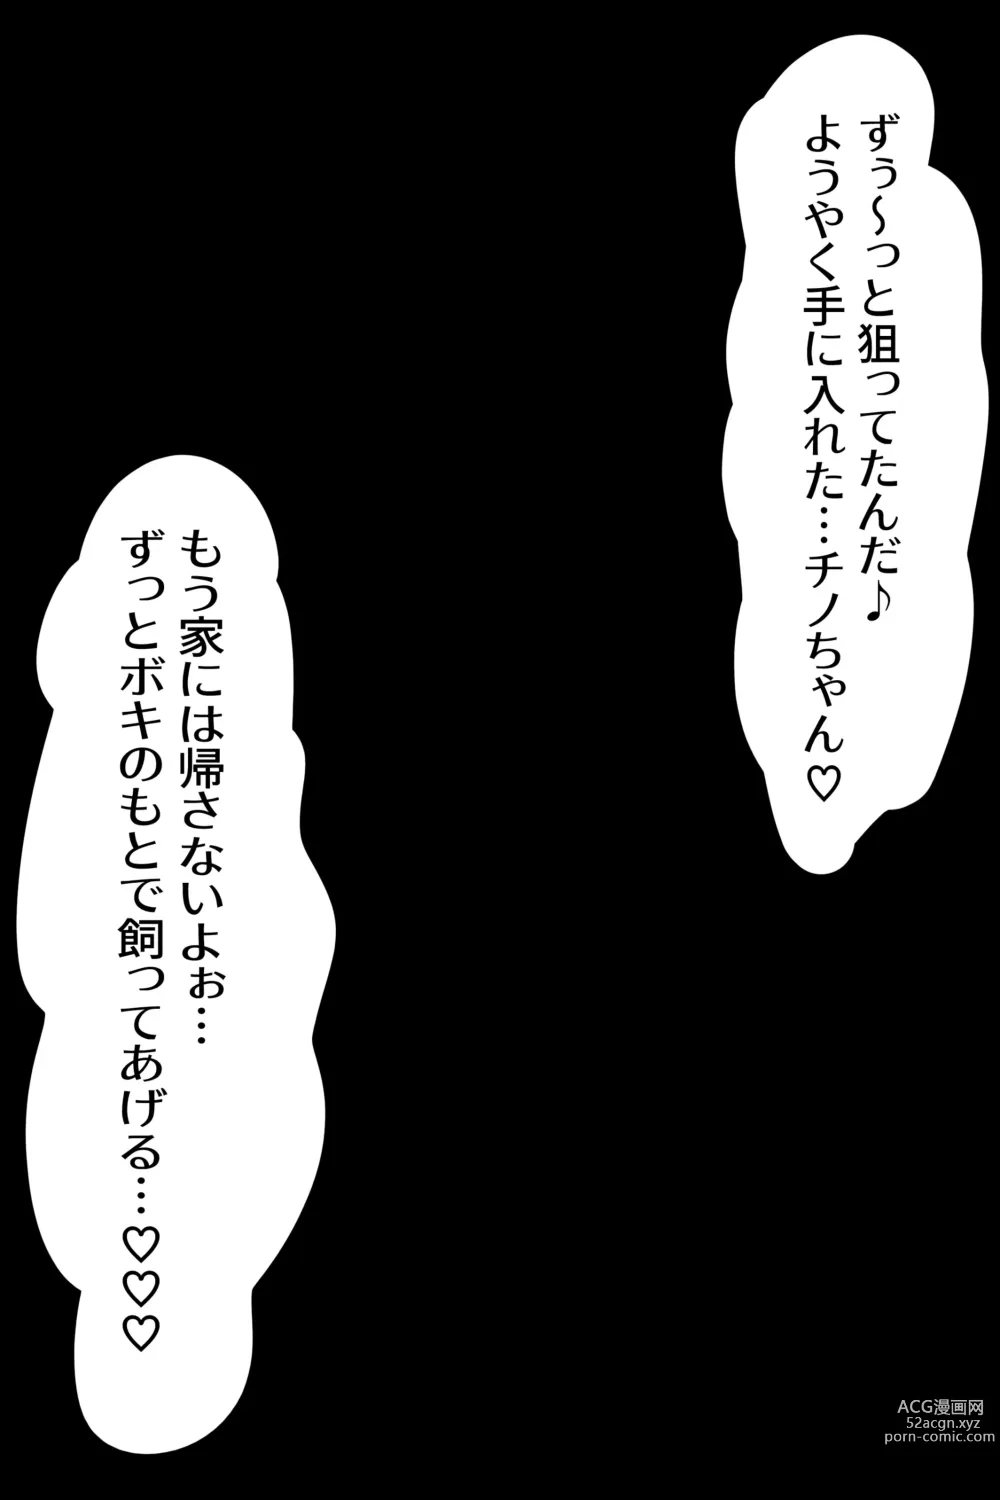 Page 9 of doujinshi Chino Kimo Otoko no Botebara Yousai Ochi CG-shuu